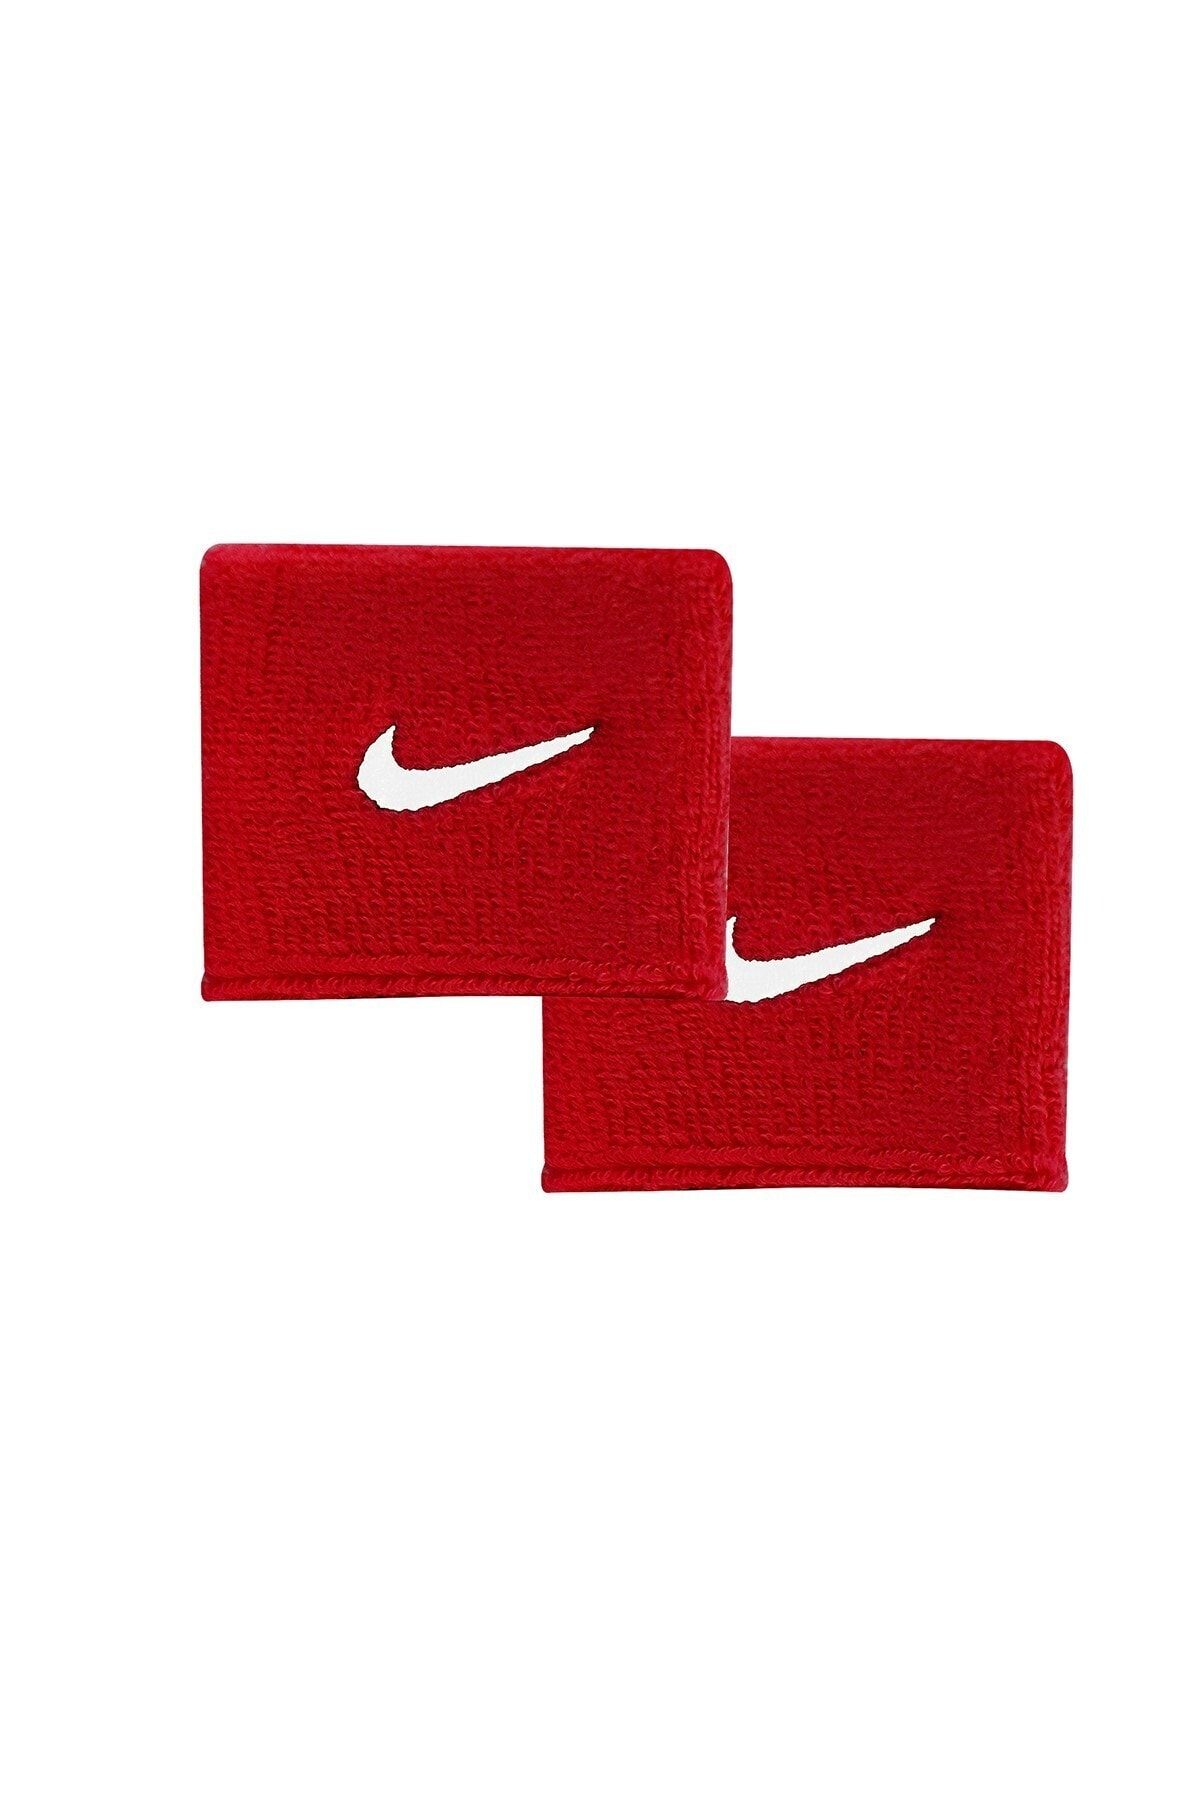 Nike Nıke Nıke Swoosh Wrıstbands Bileklik N.nn.04.601.os